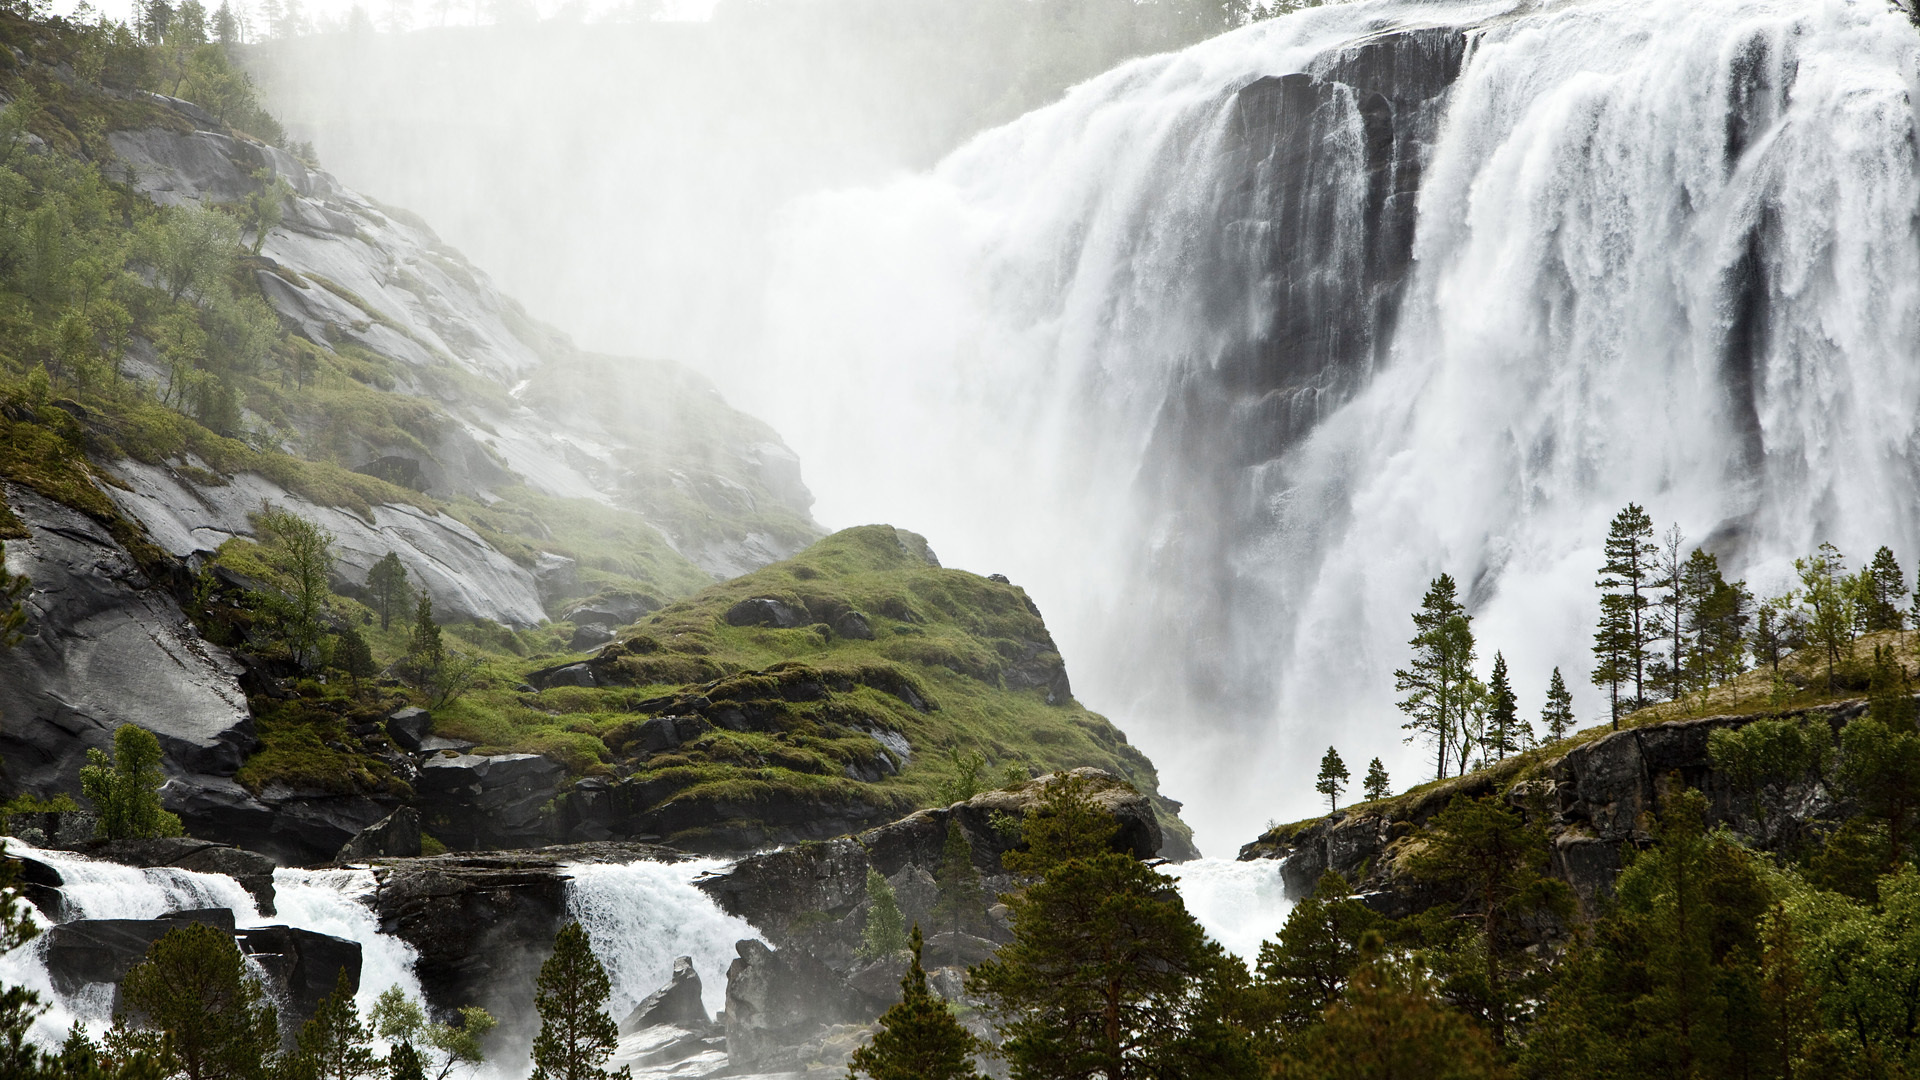 والپیپر جذاب از آبشار آب بلند و طبیعت سبز و زیبا